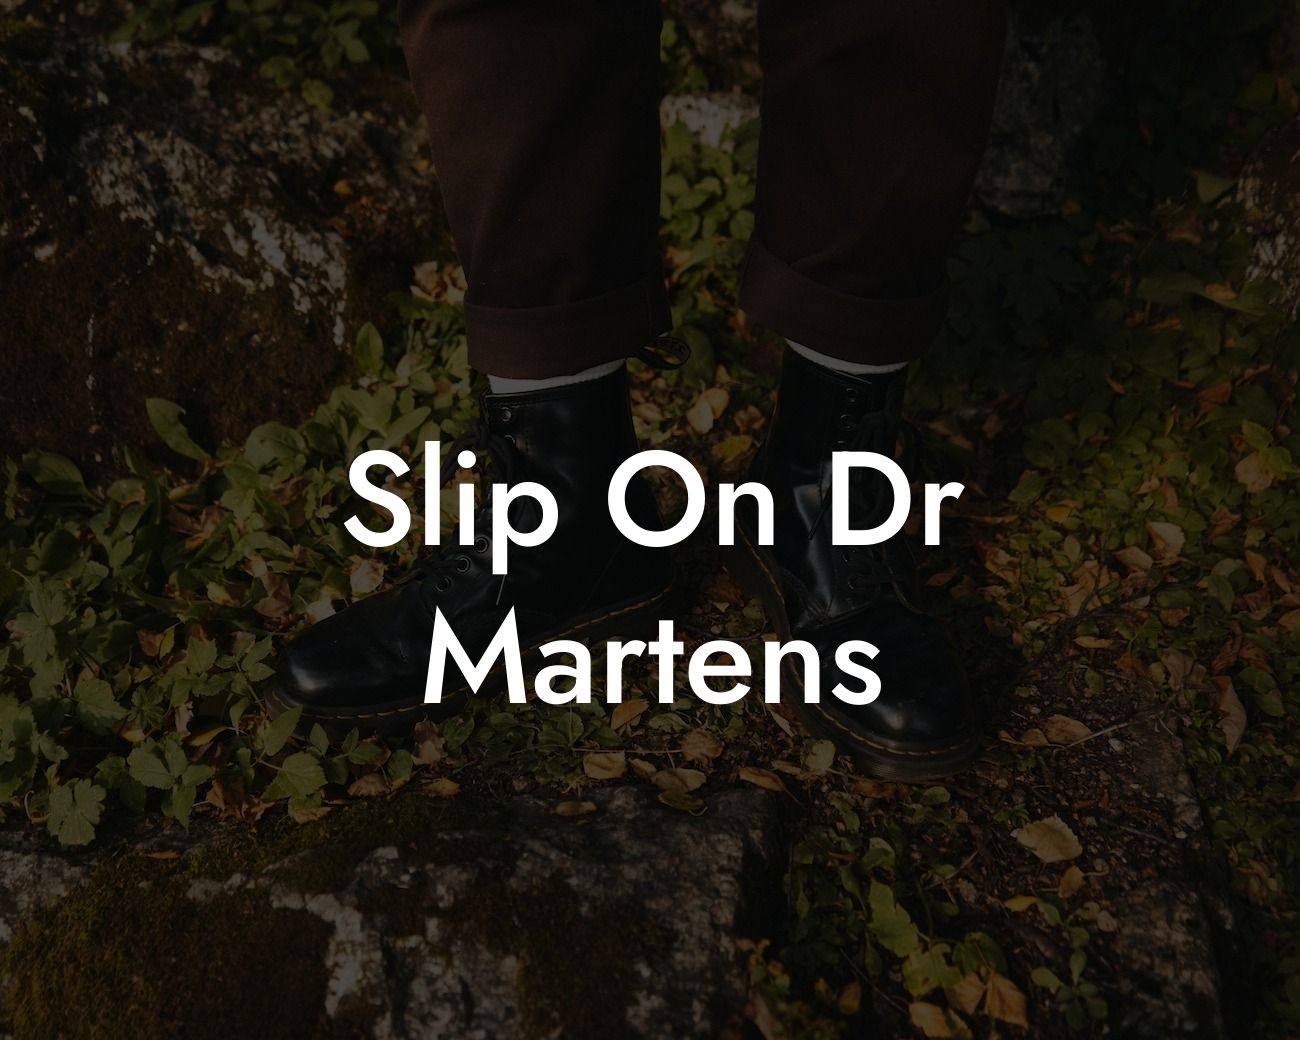 Slip On Dr Martens